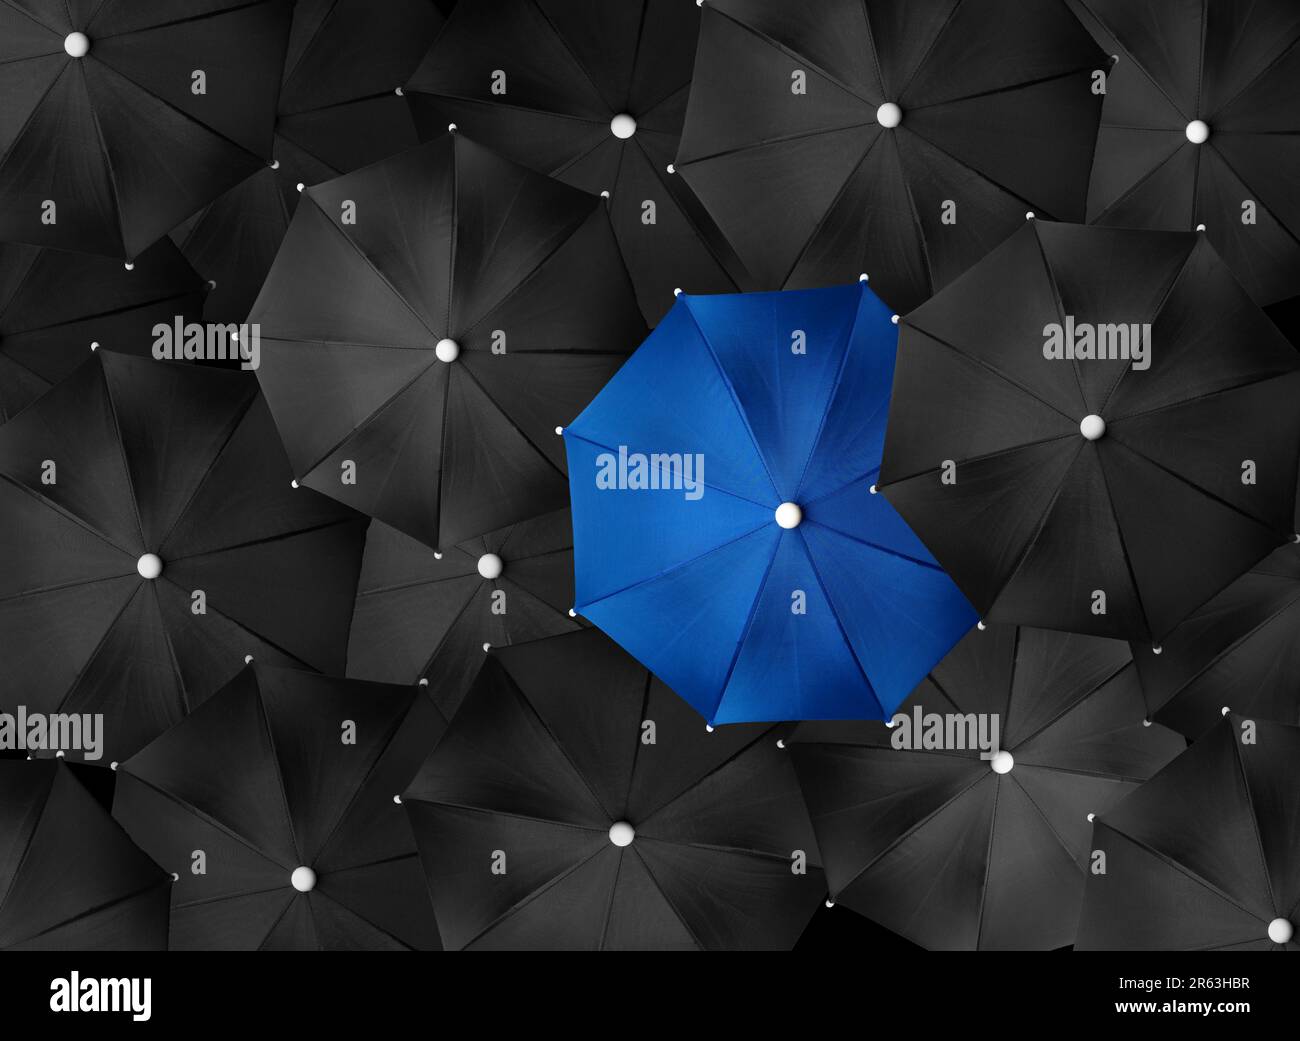 Immagine concettuale con un sacco di ombrelli neri e un ombrello blu che si distingue, essere unico Foto Stock